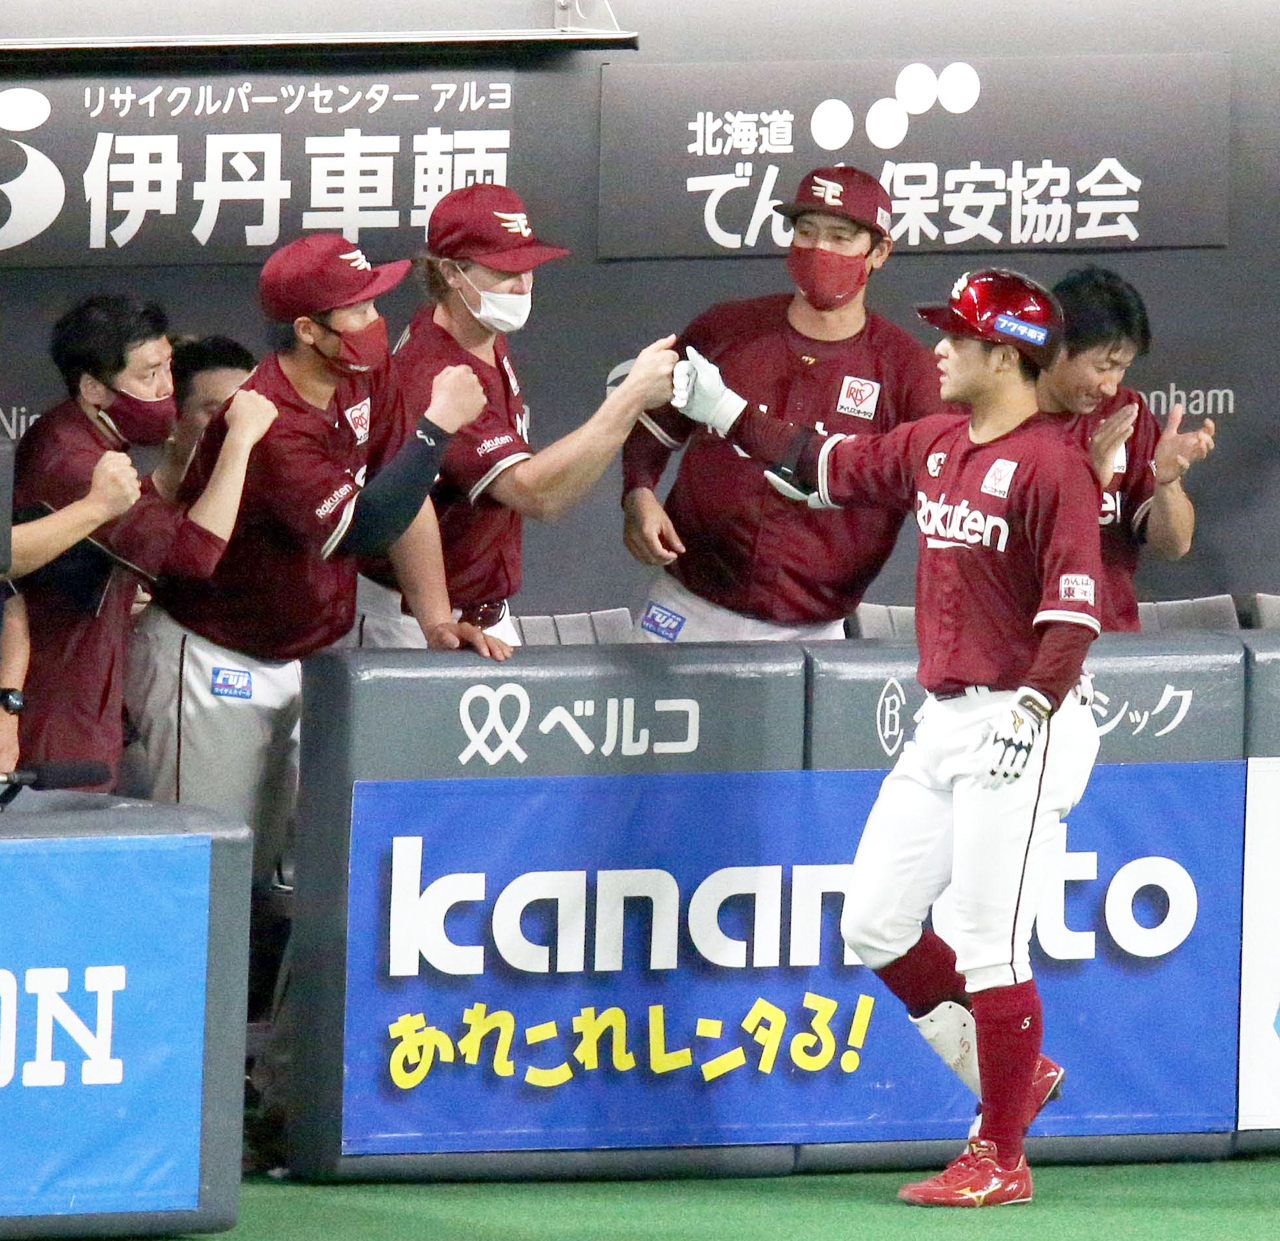 5回表楽天無死、茂木（右手前）は右越え本塁打を放ちチームメートに出迎えられる（撮影・佐藤翔太）